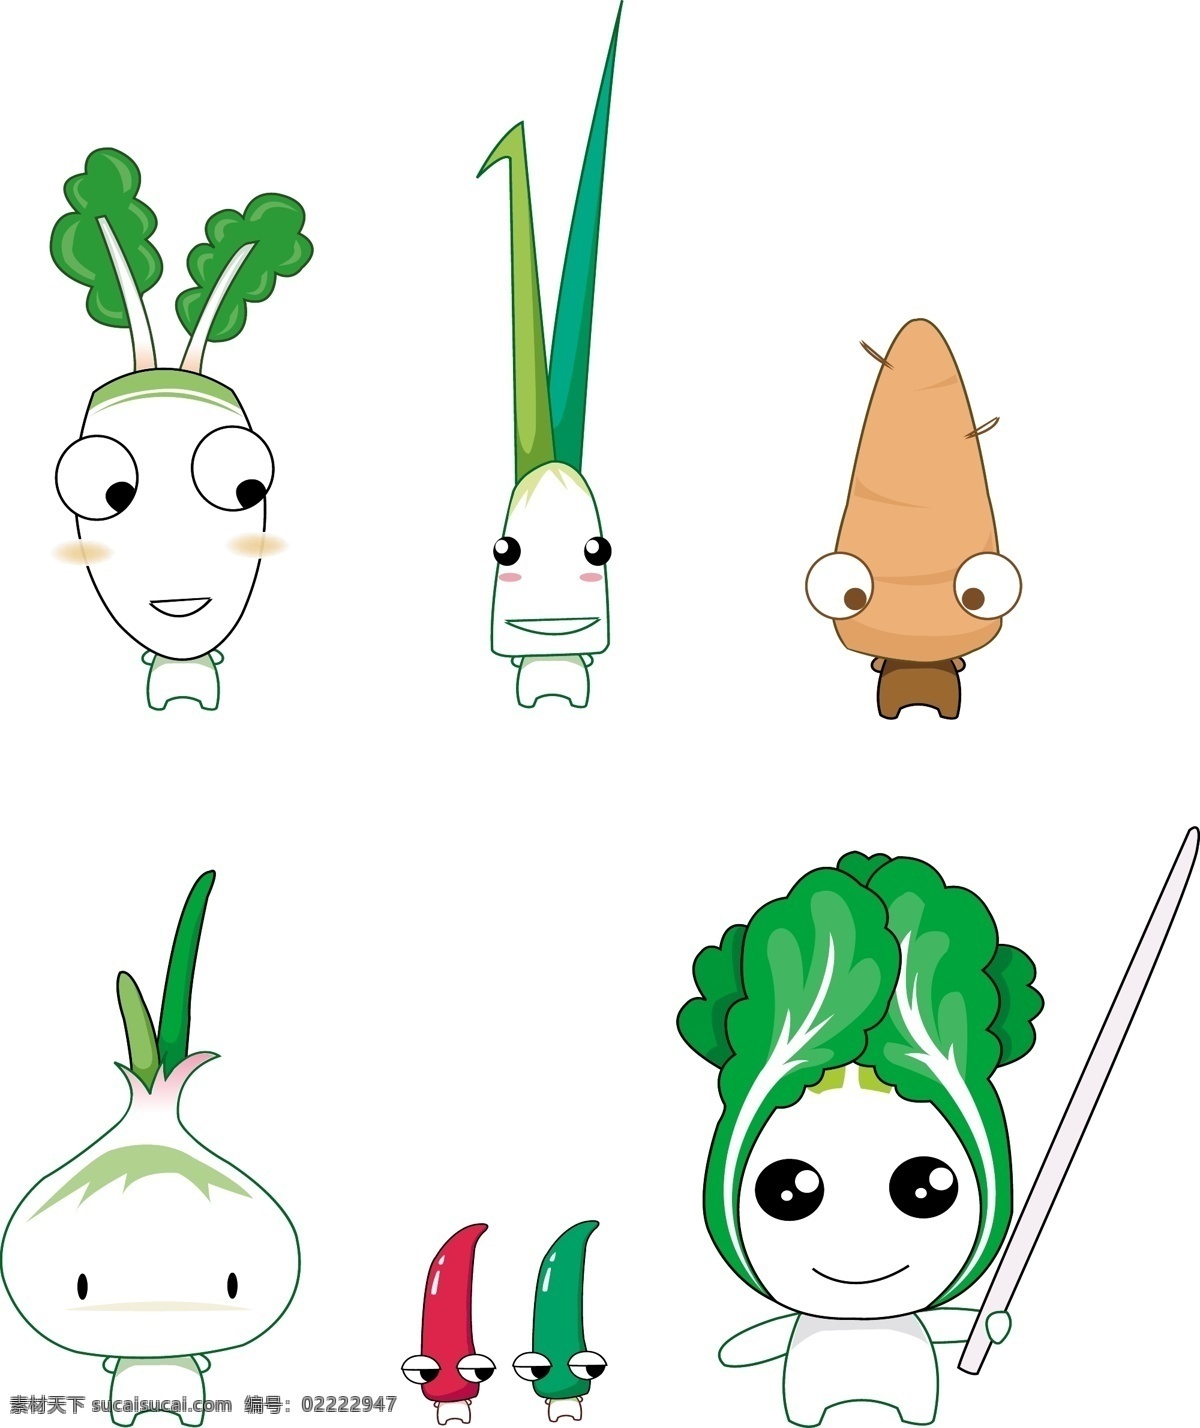 蔬菜宝宝 蔬菜 卡通 洋葱 白菜 辣椒 萝卜 山药 大蒜 生物世界 矢量图库